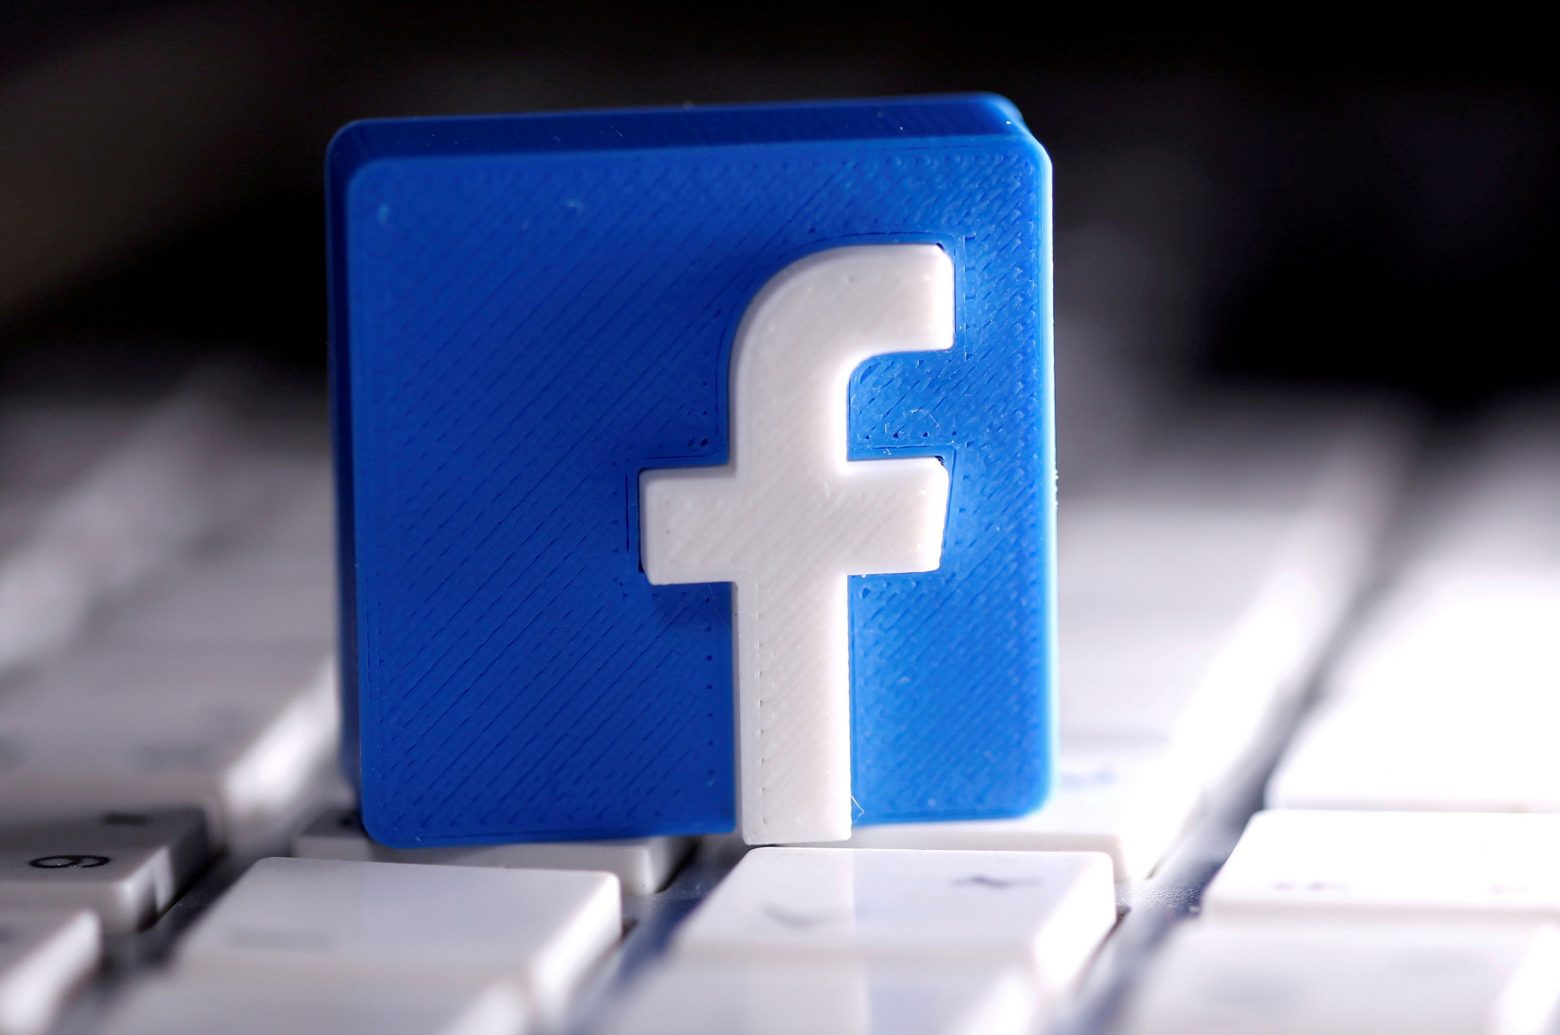 Facebook - Η λίστα με τις δημοφιλέστερες αναρτήσεις φέρνει σε δύσκολη θέση την εταιρεία